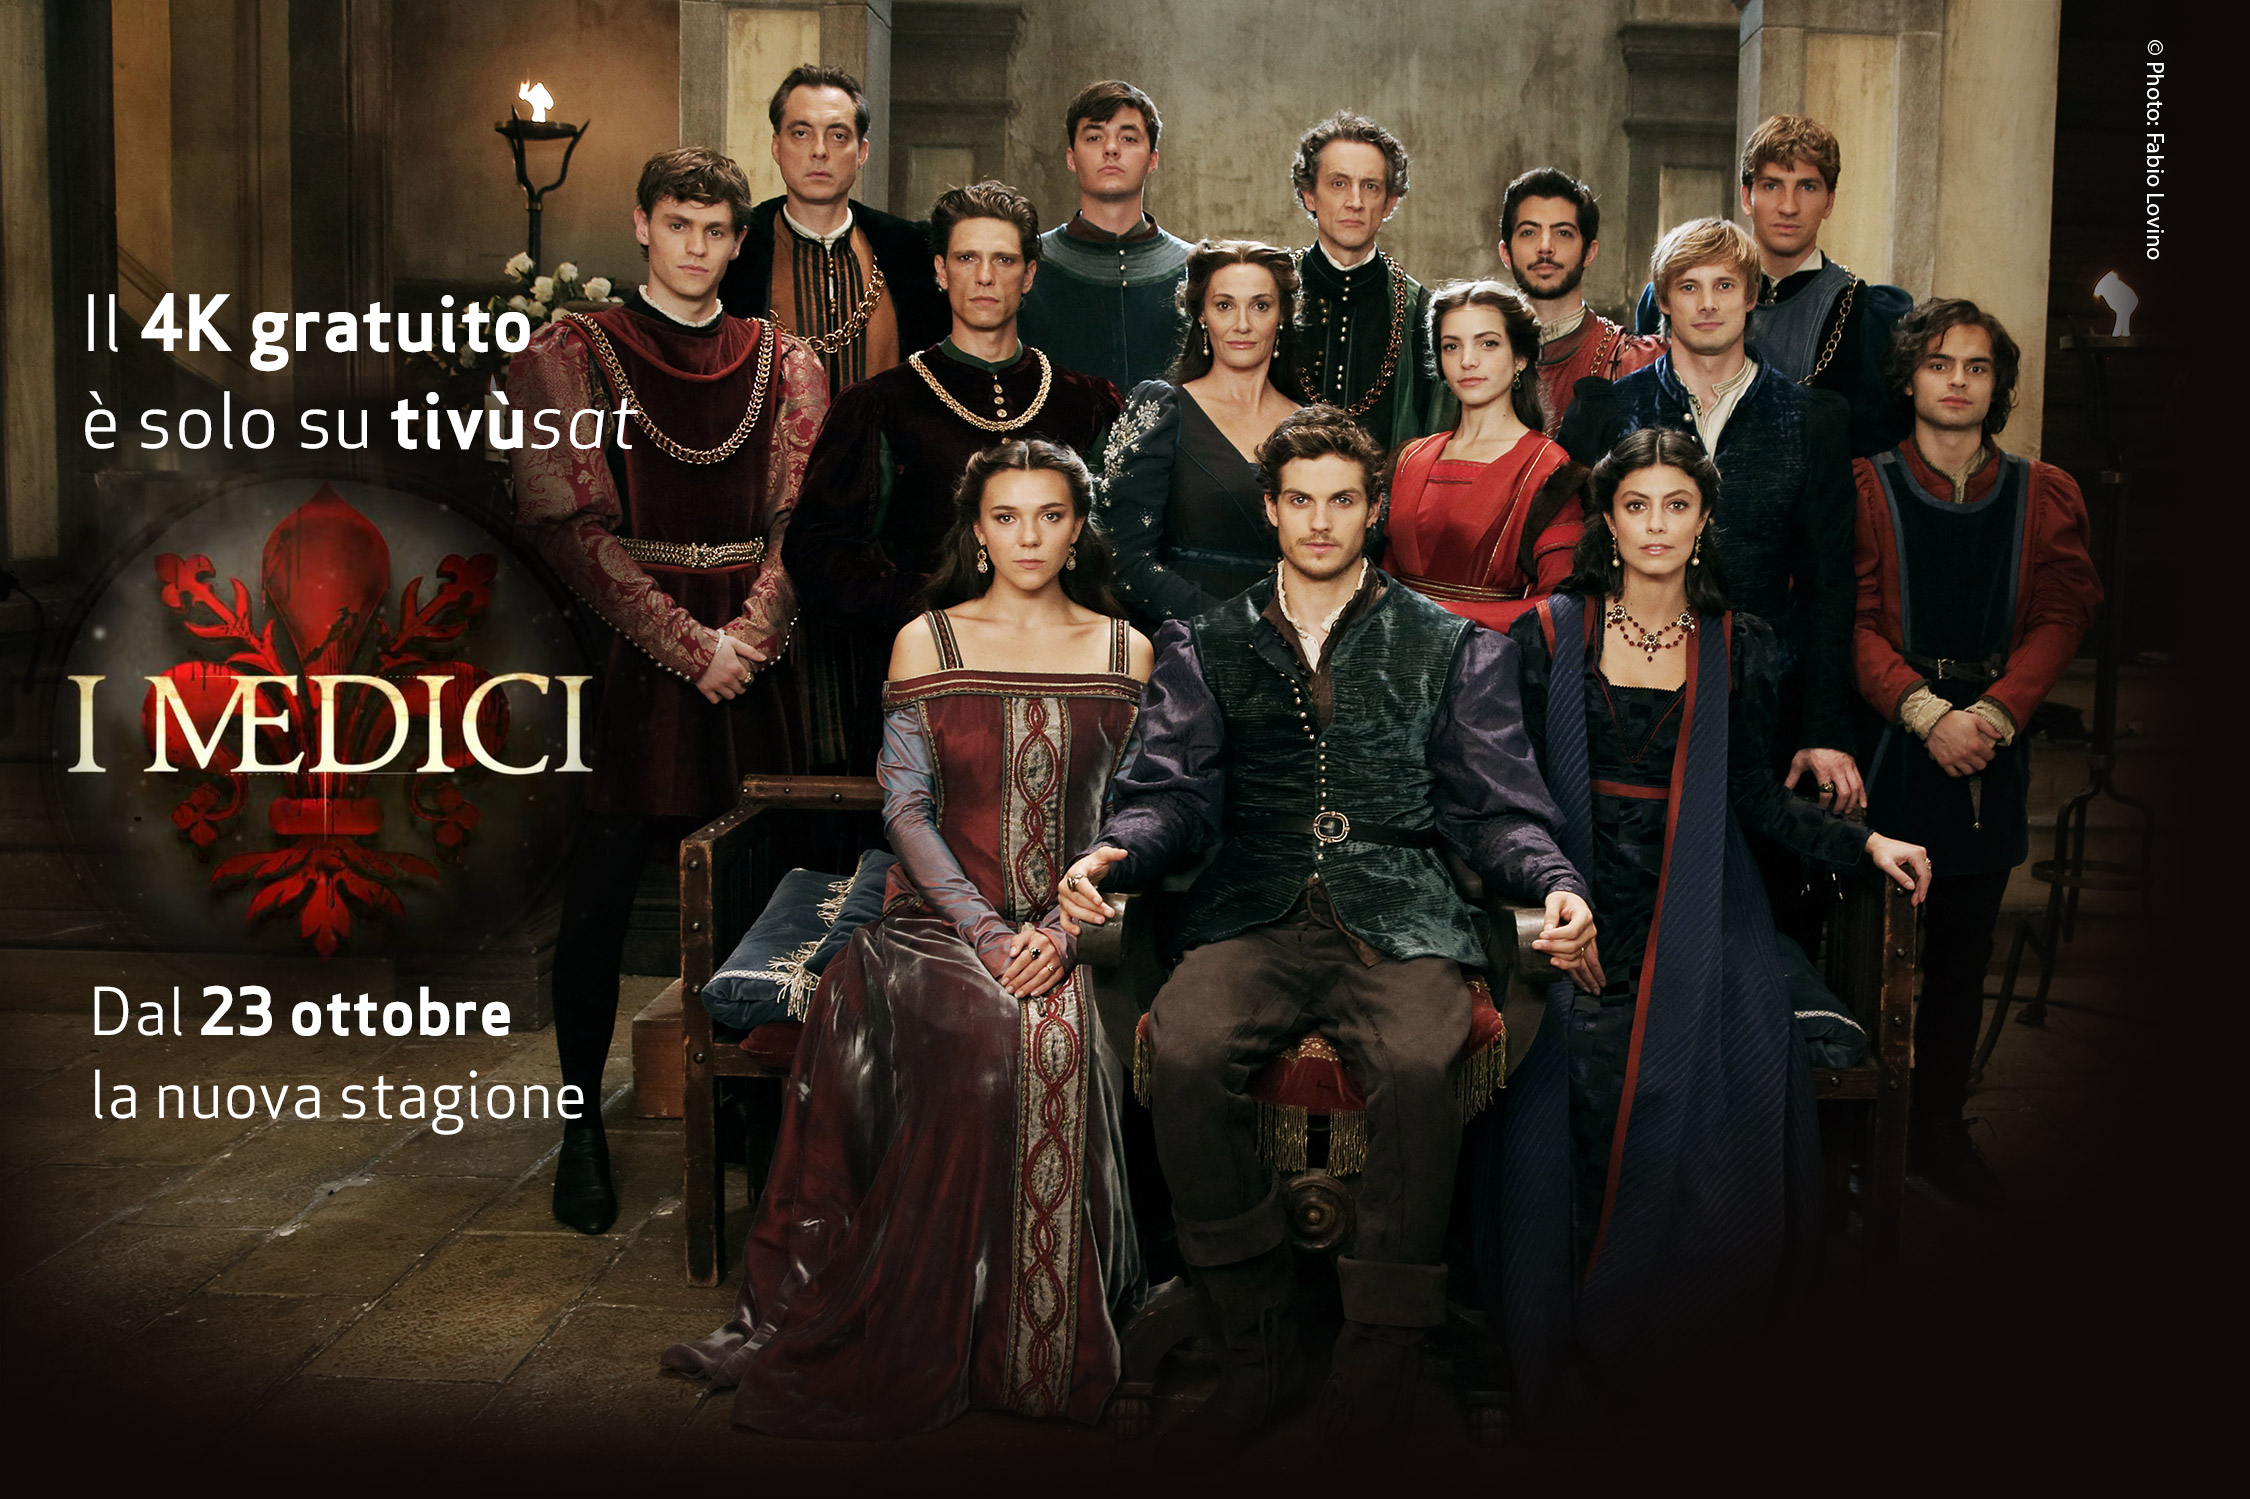 I Medici - Lorenzo Il Magnifico, da stasera su Rai 1 HD (anche in 4K con Tivùsat)